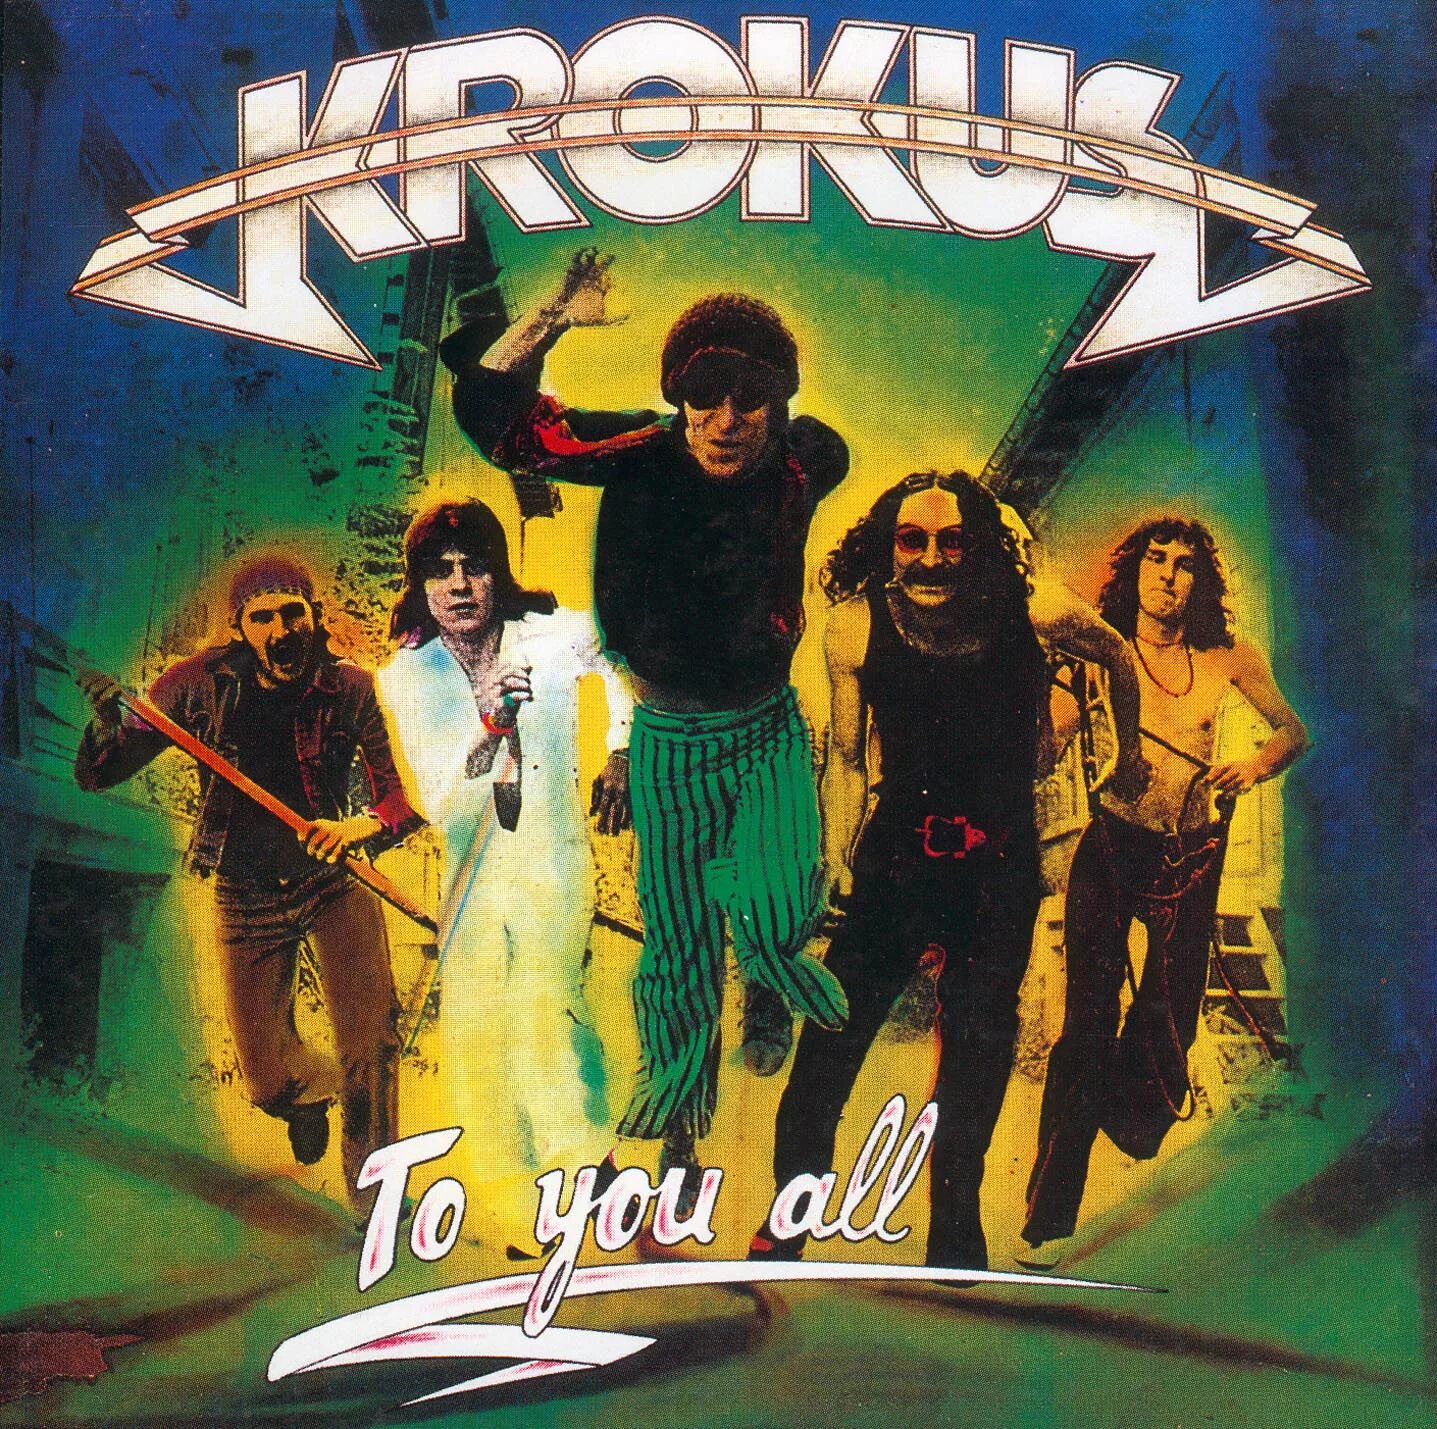 Группа Krokus. Krokus группа 1980. Krokus to you all 1977. Krokus группа обложка. Альбом песен посвященный крокусу